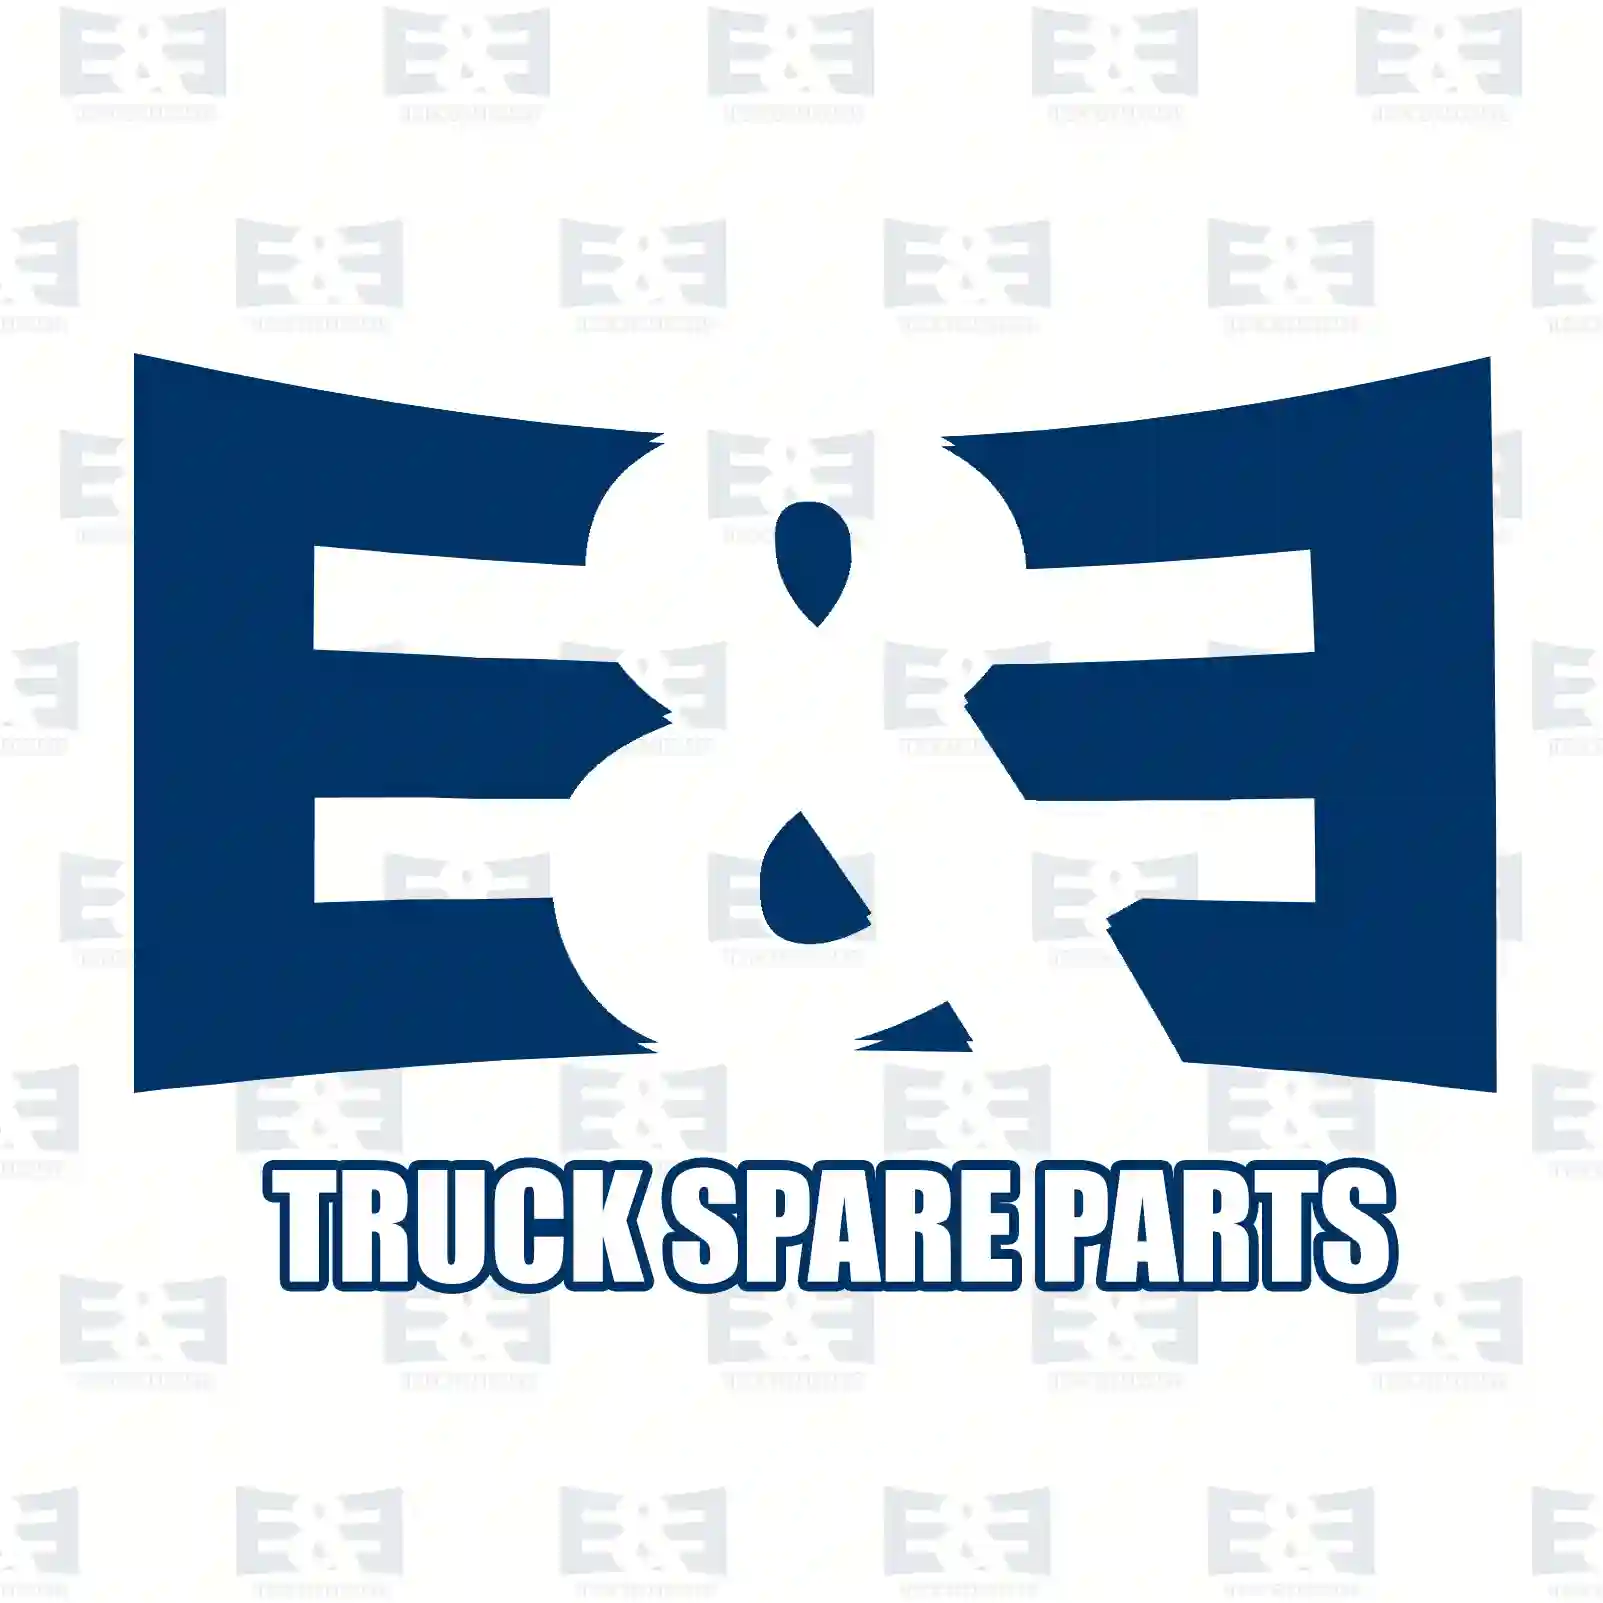  Socket, plastic, screw connection || E&E Truck Spare Parts | Truck Spare Parts, Auotomotive Spare Parts